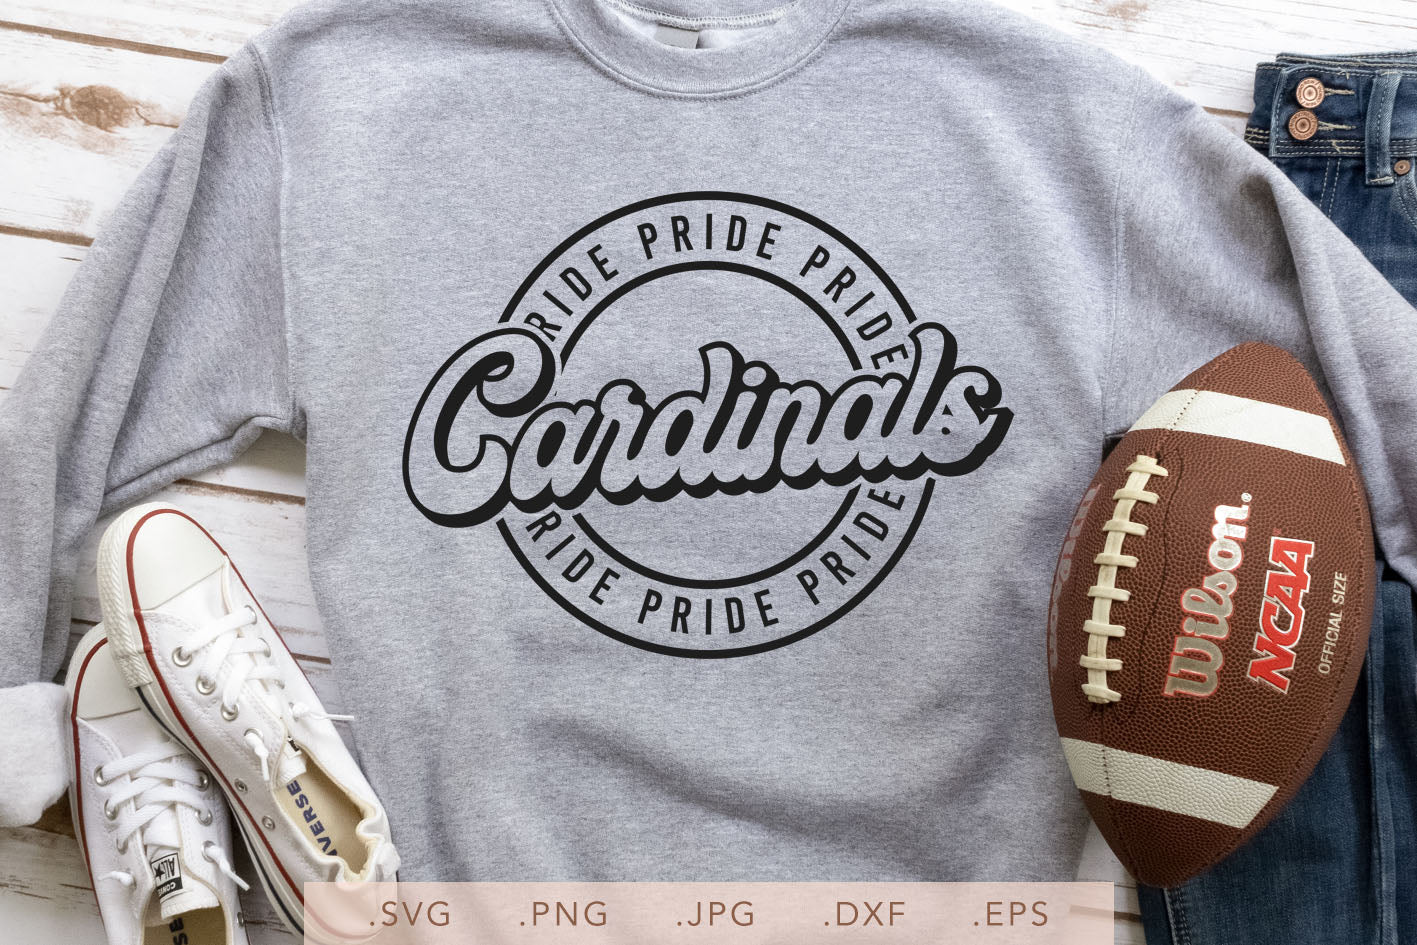 cardinals pride shirt